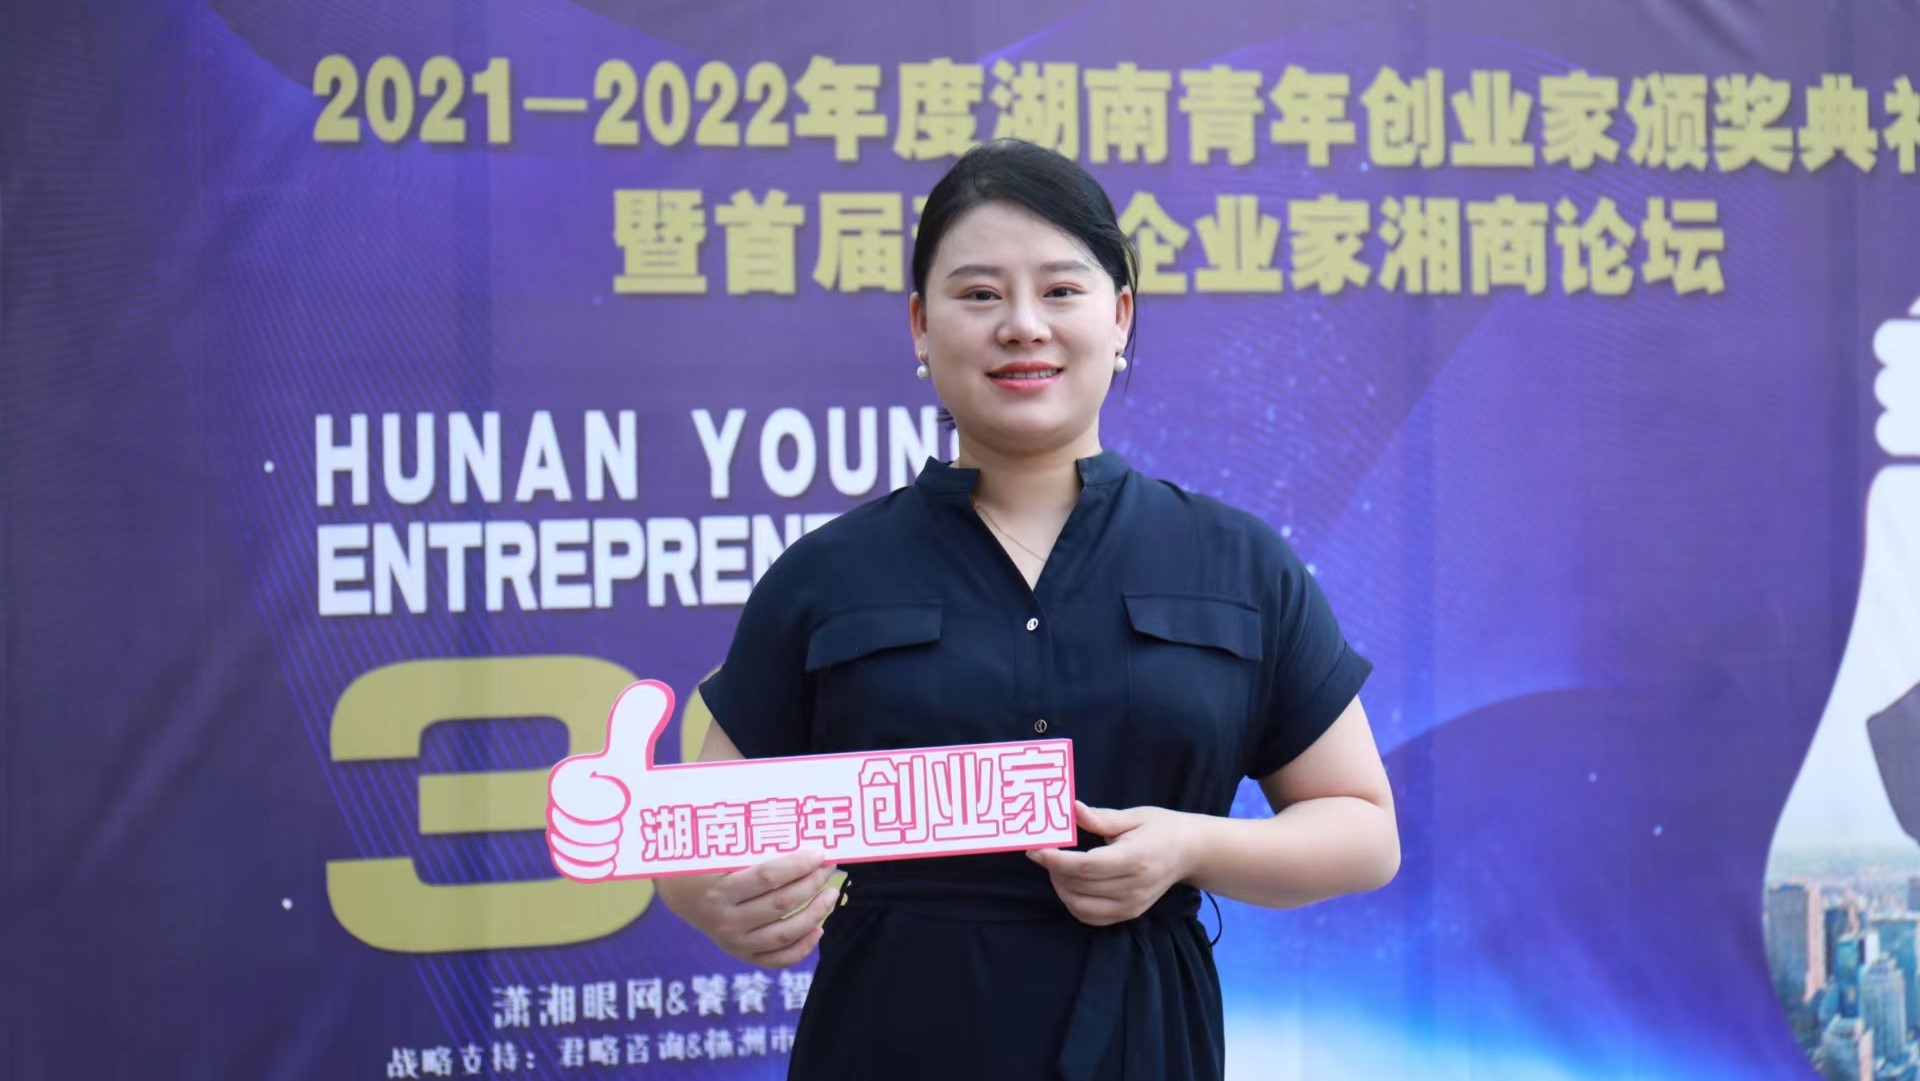 飞鱼周新玲被授予“2021-2022年度湖南青年创业家”奖